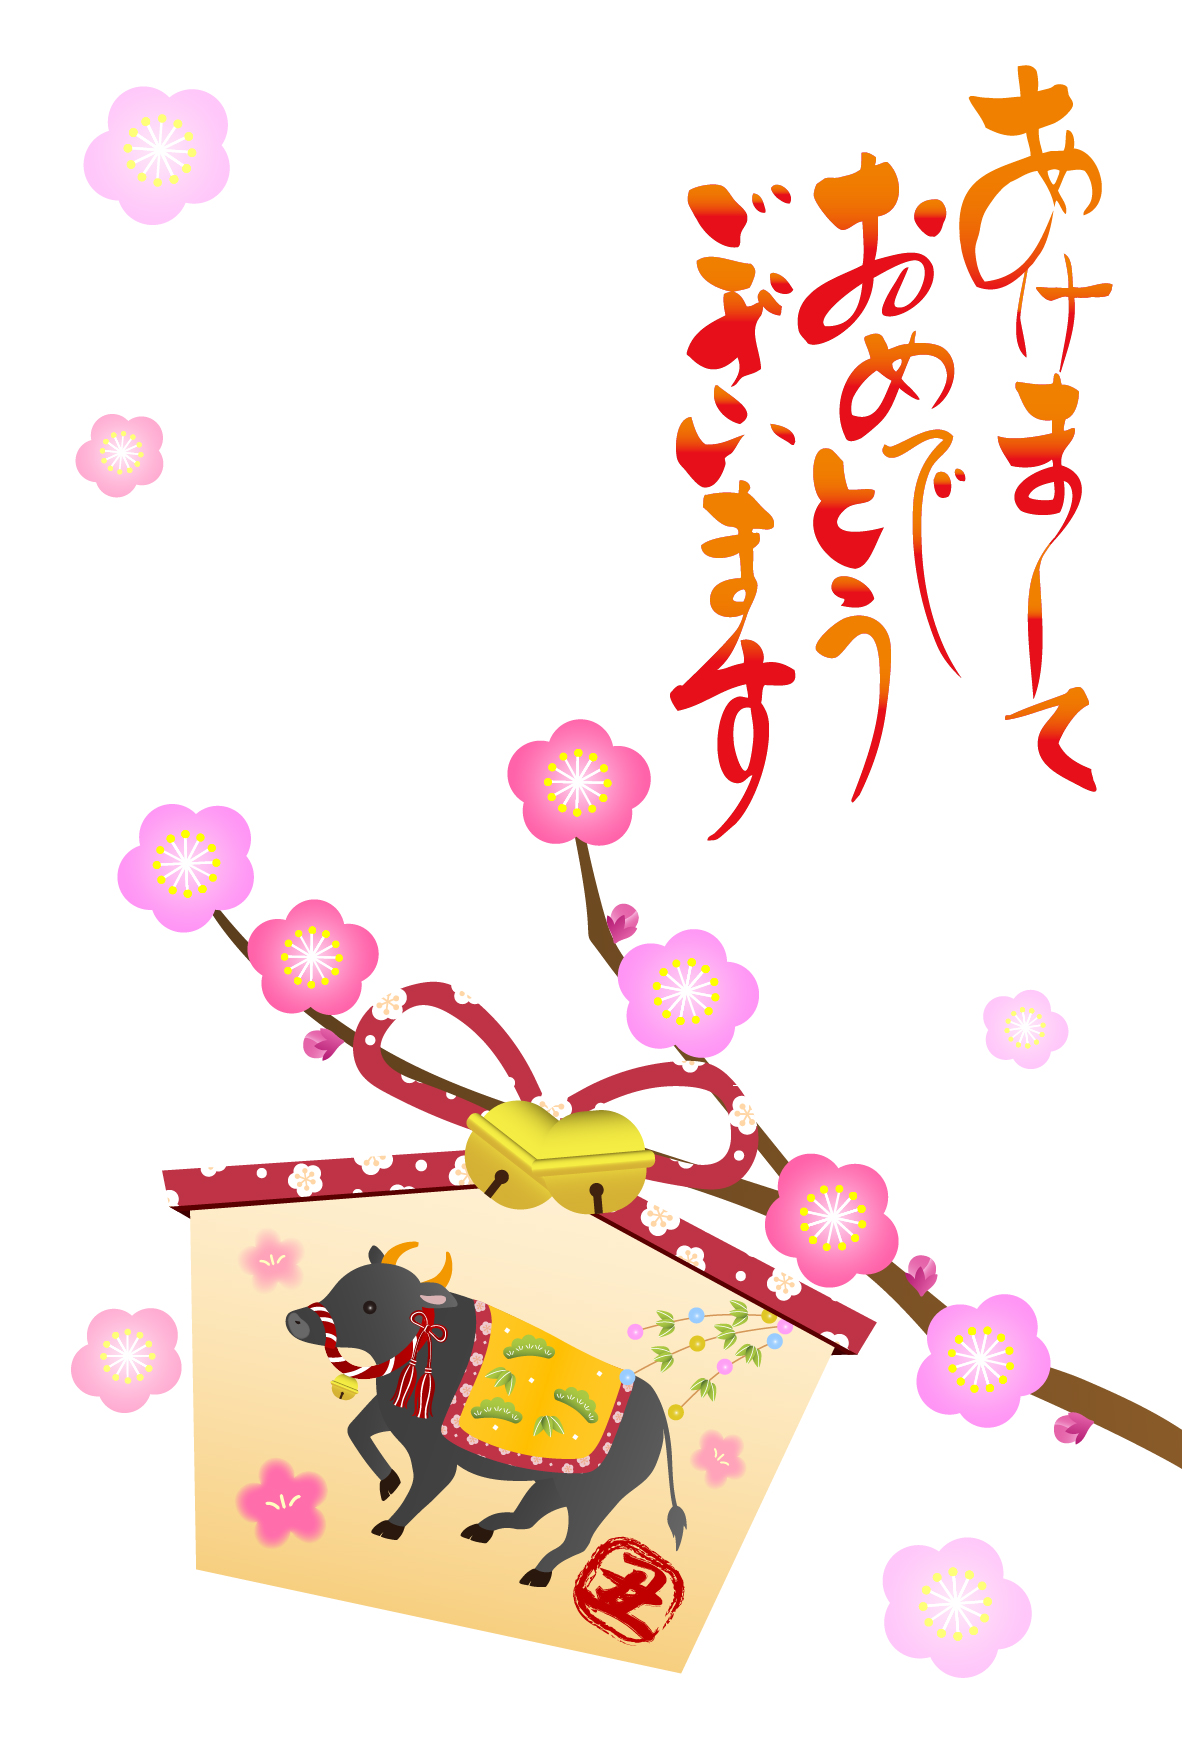 牛 丑 の絵馬と梅の花の年賀状テンプレート